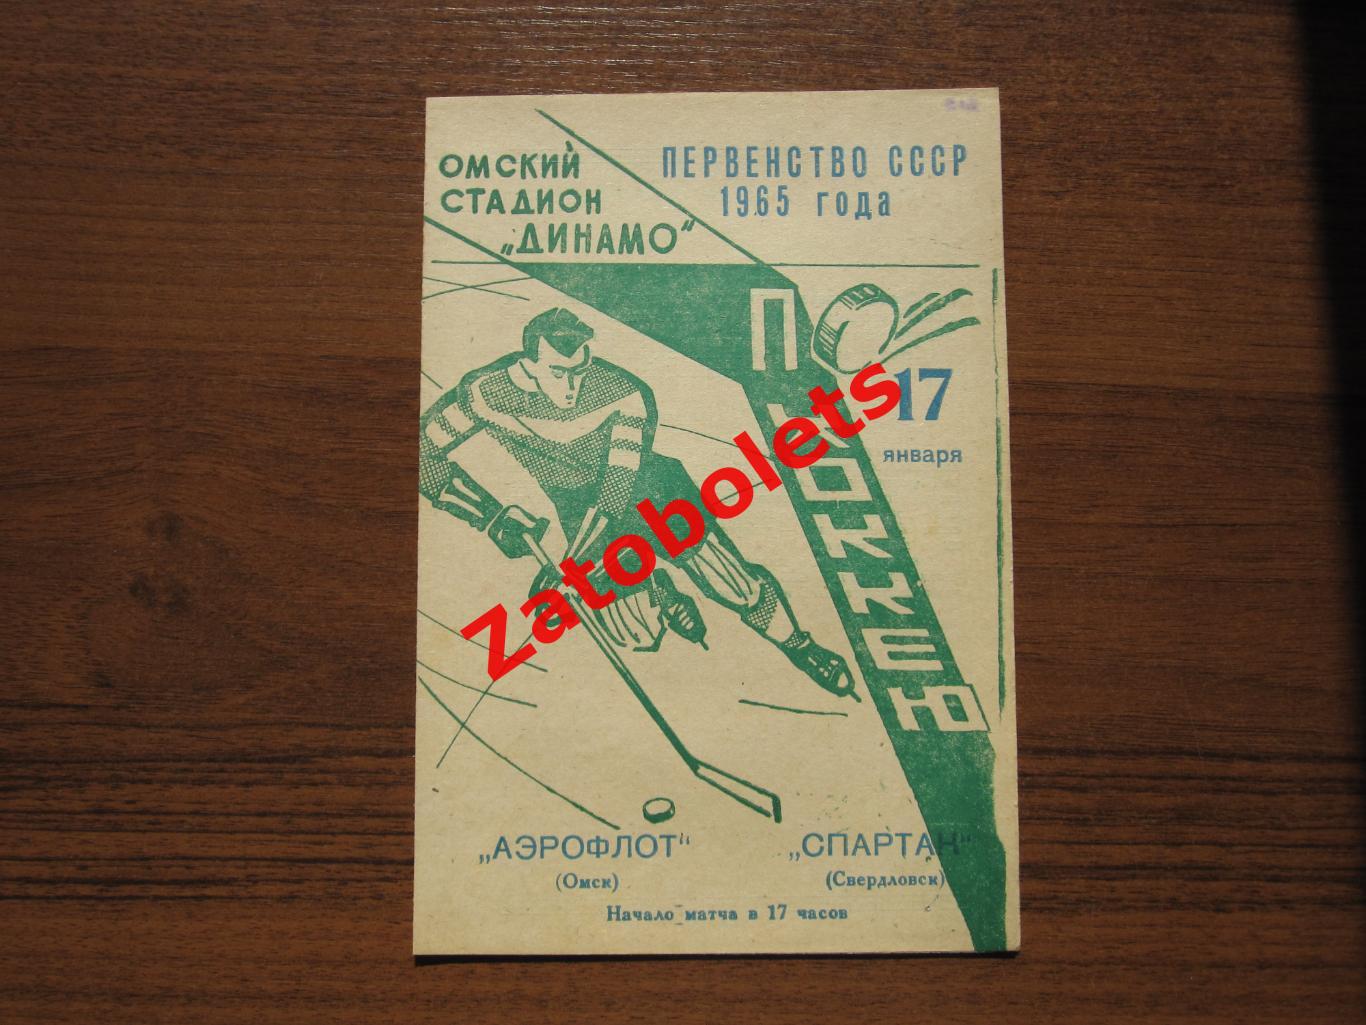 Аэрофлот Омск - Спартак Свердловск 17.01.1965